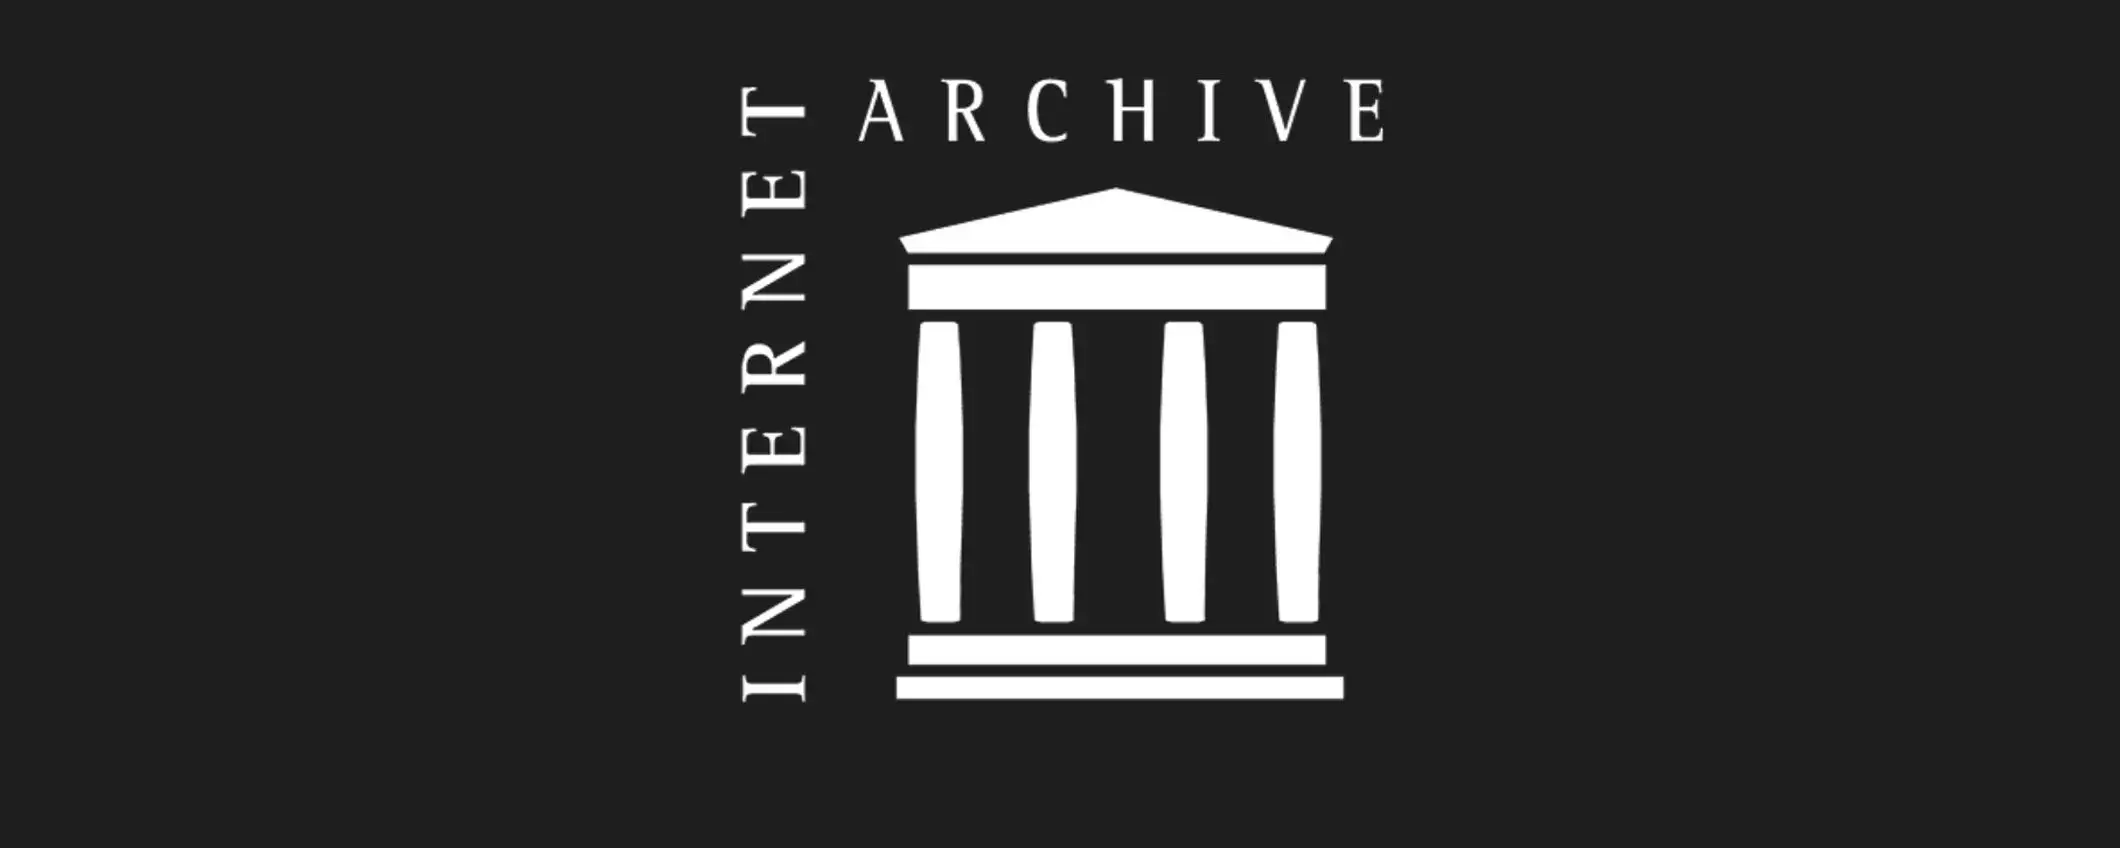 Internet Archive rimuove oltre 500.000 libri